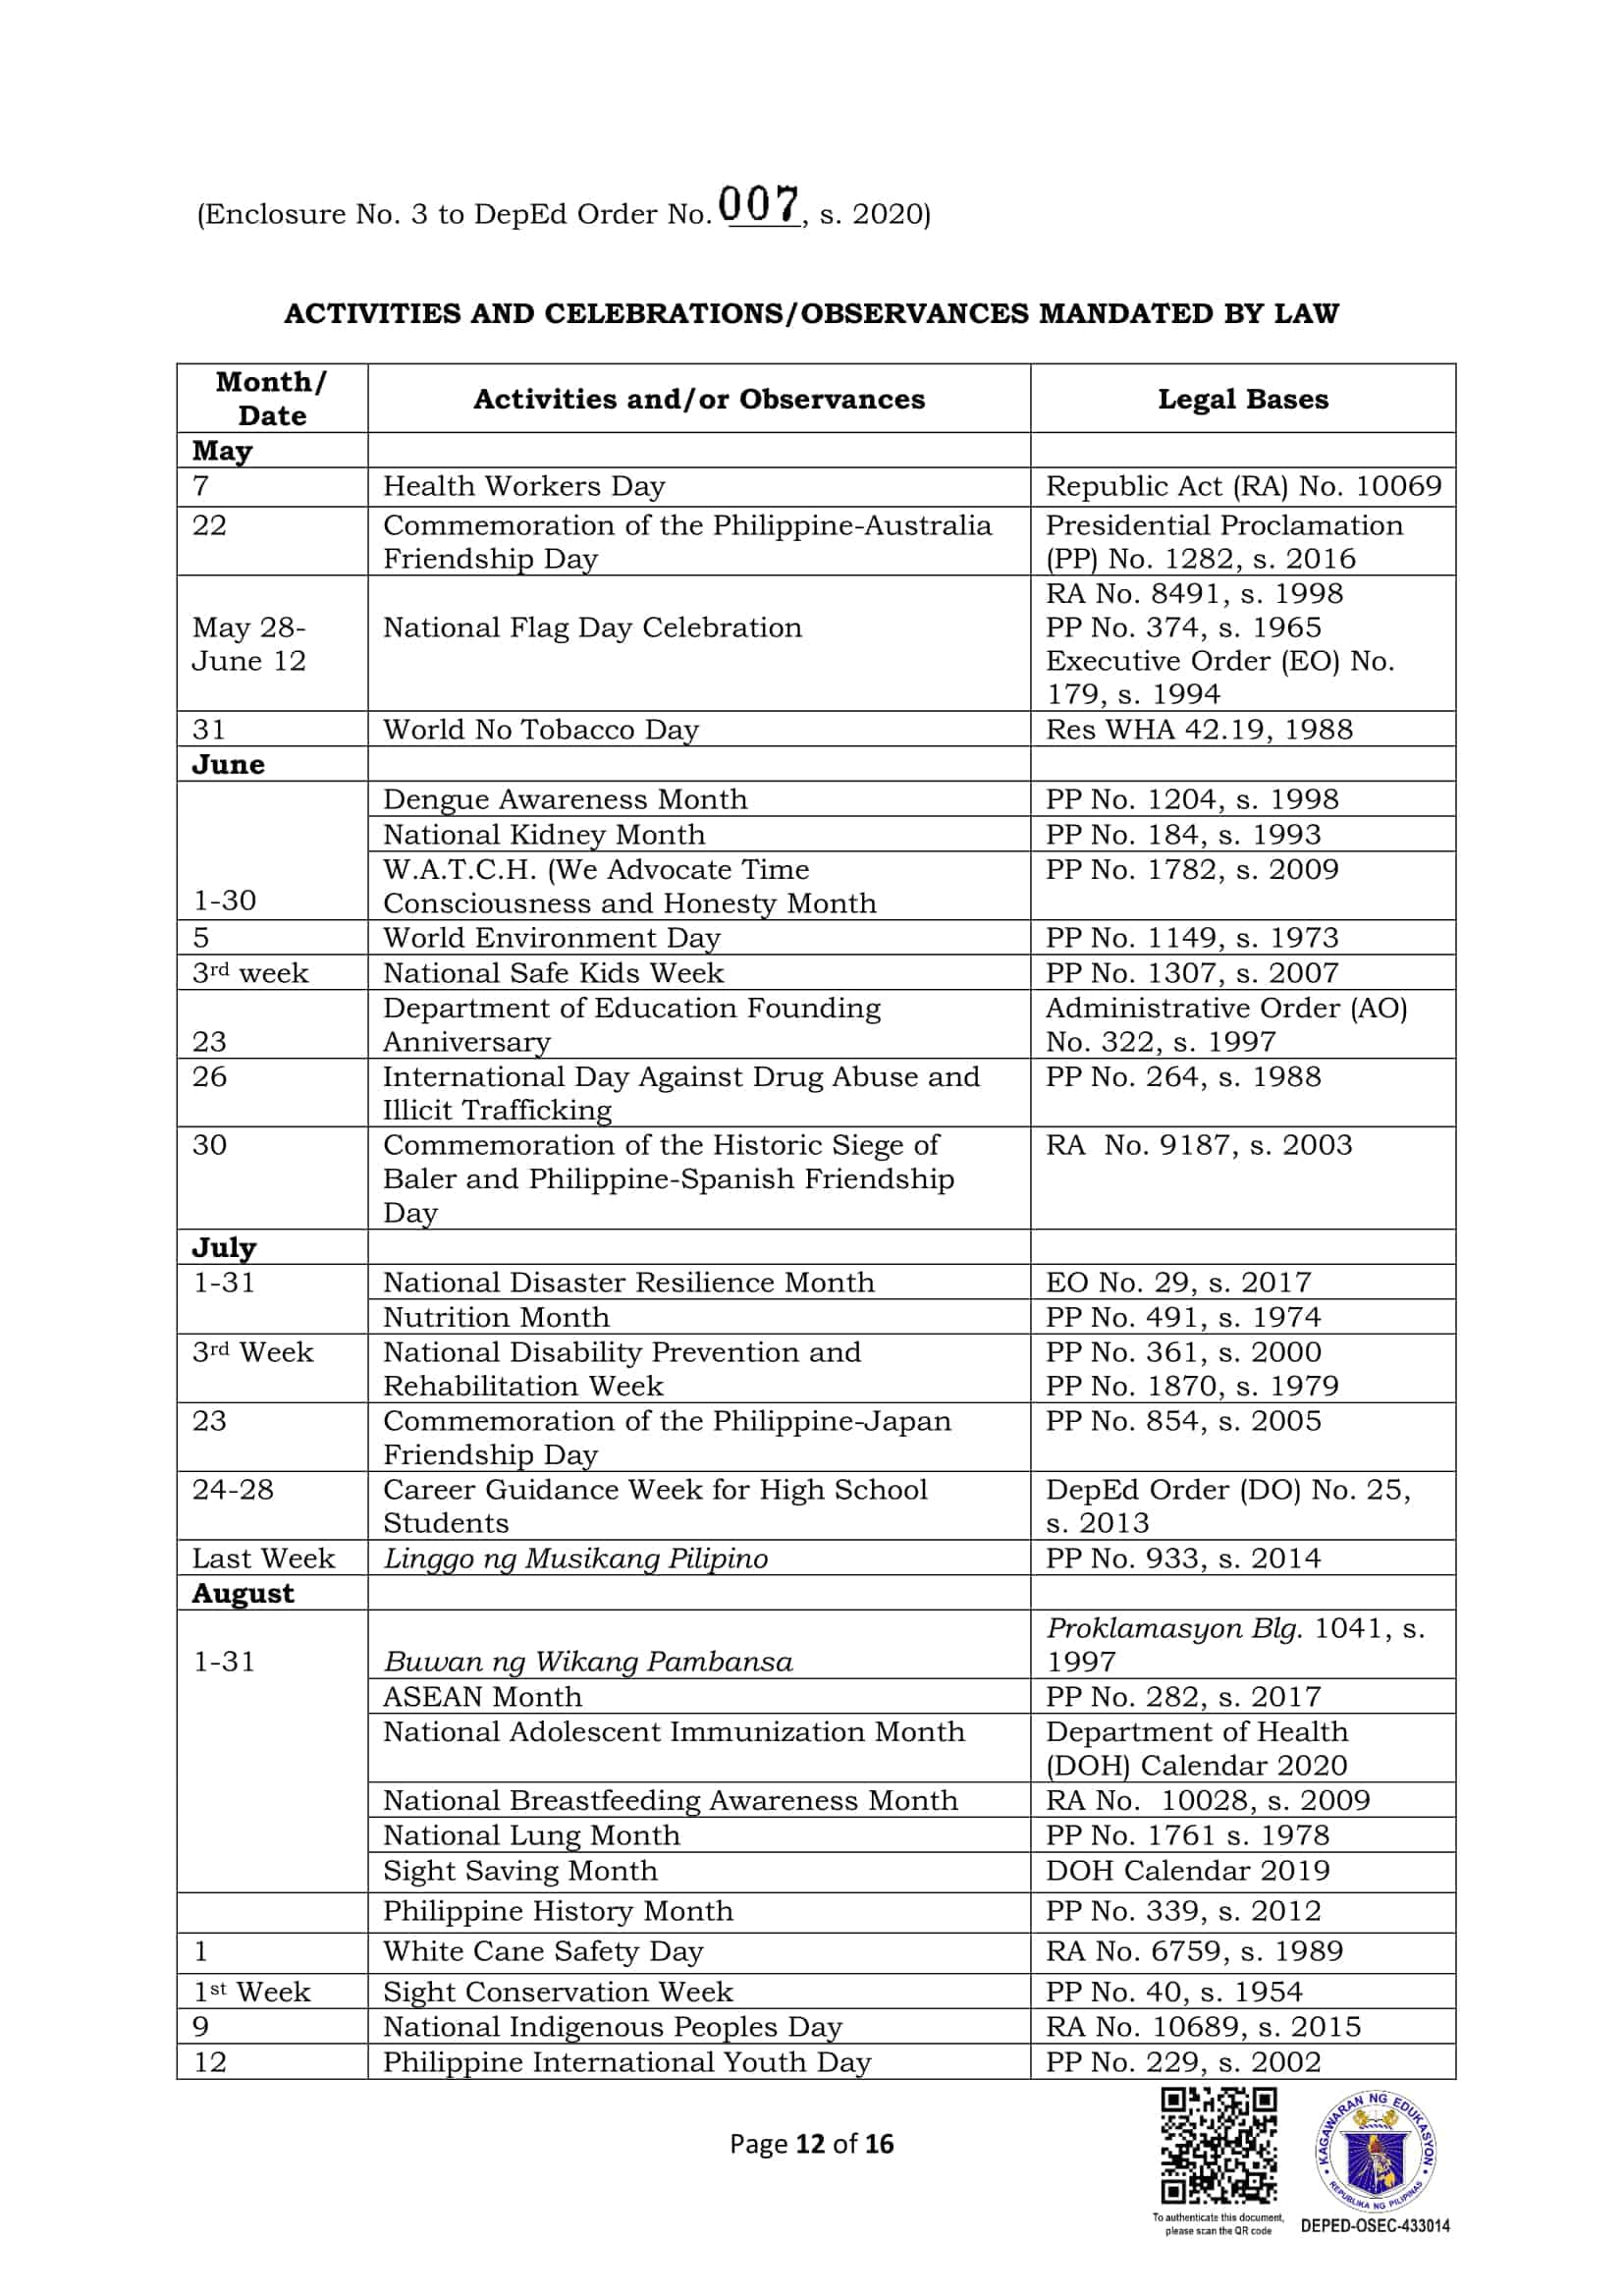 DepEd Monthly School Calendar of Activities for School Year 20202021